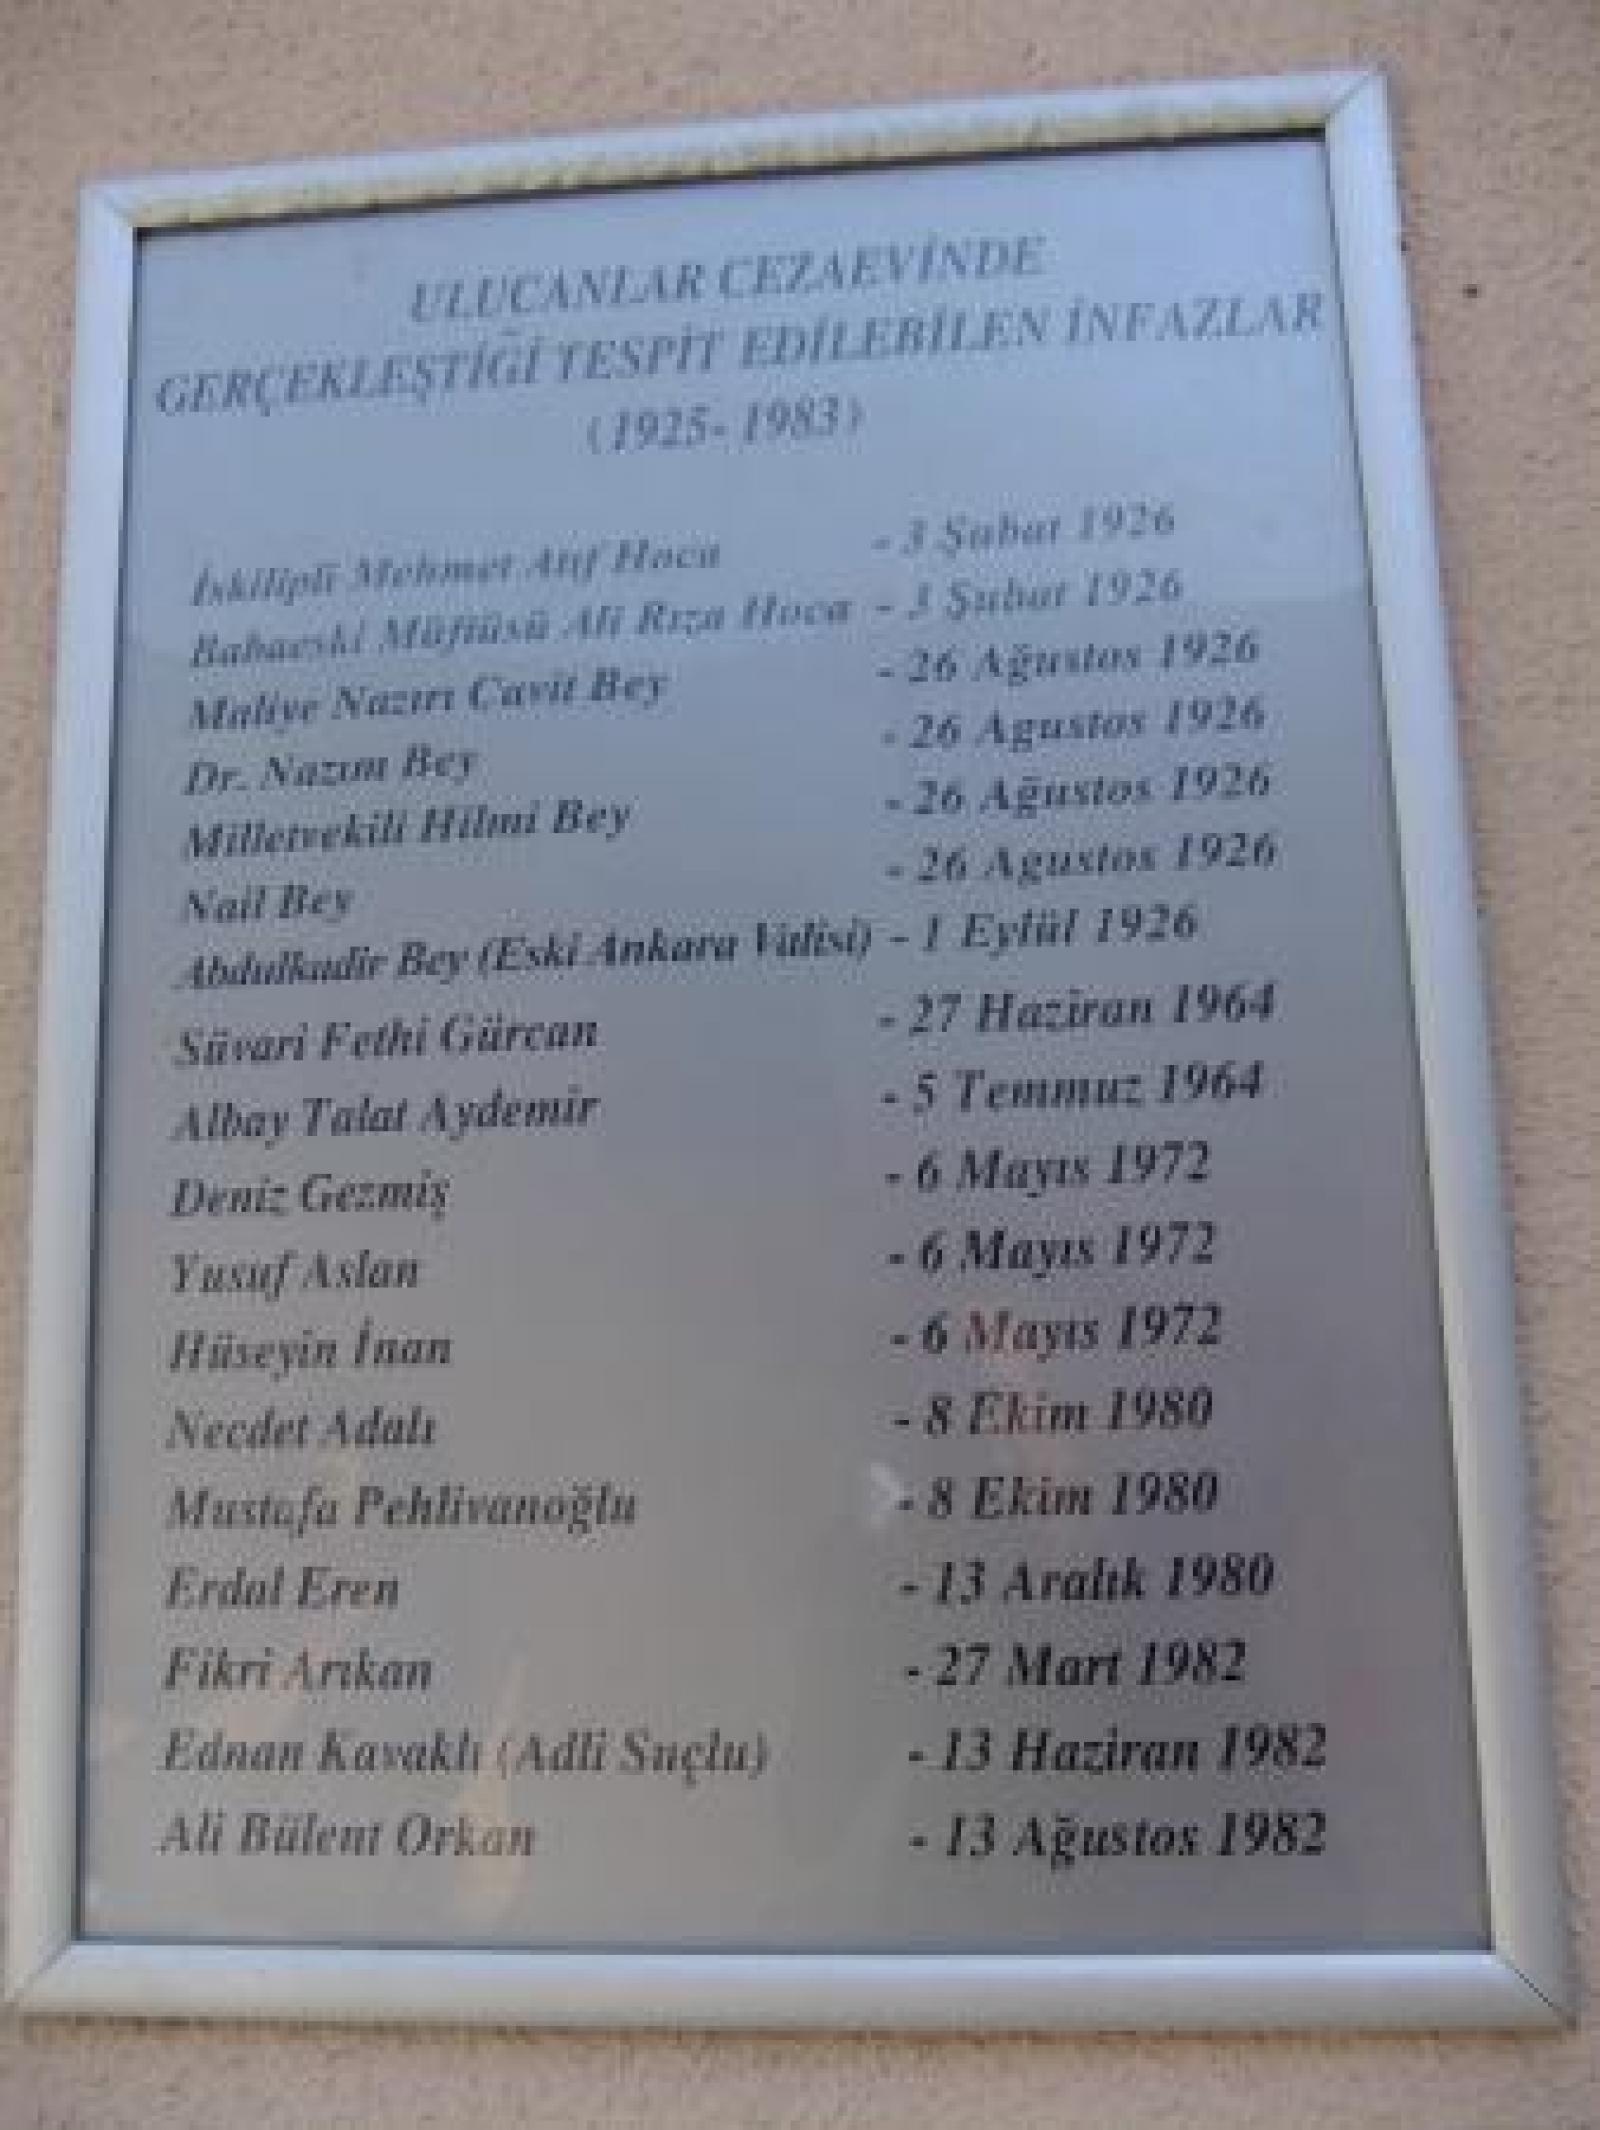 قائمة الإعدامات ، متحف سجن أولوكانلار ، محمد أكينجي ، 18 أغسطس / آب 2013